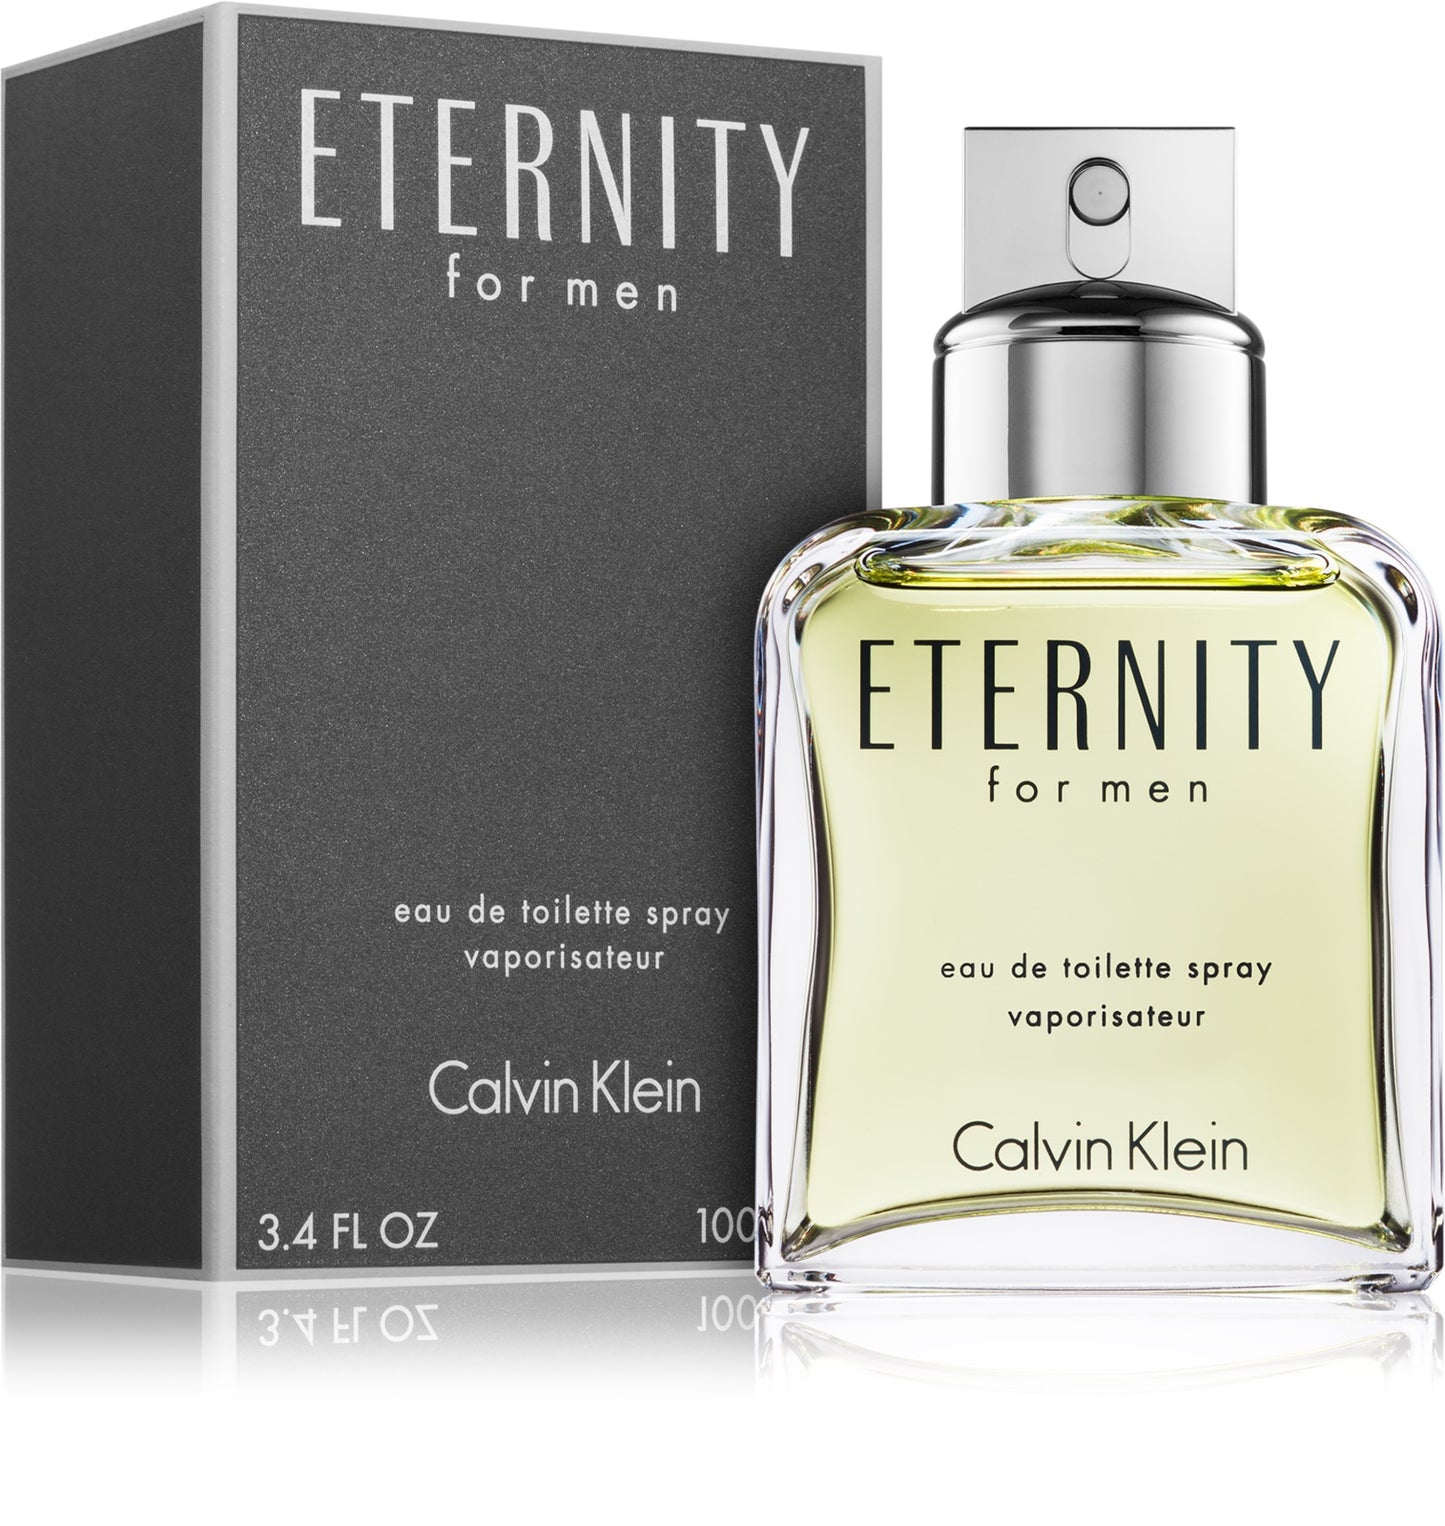 Eternity EDT for Men - Perfume Planet 